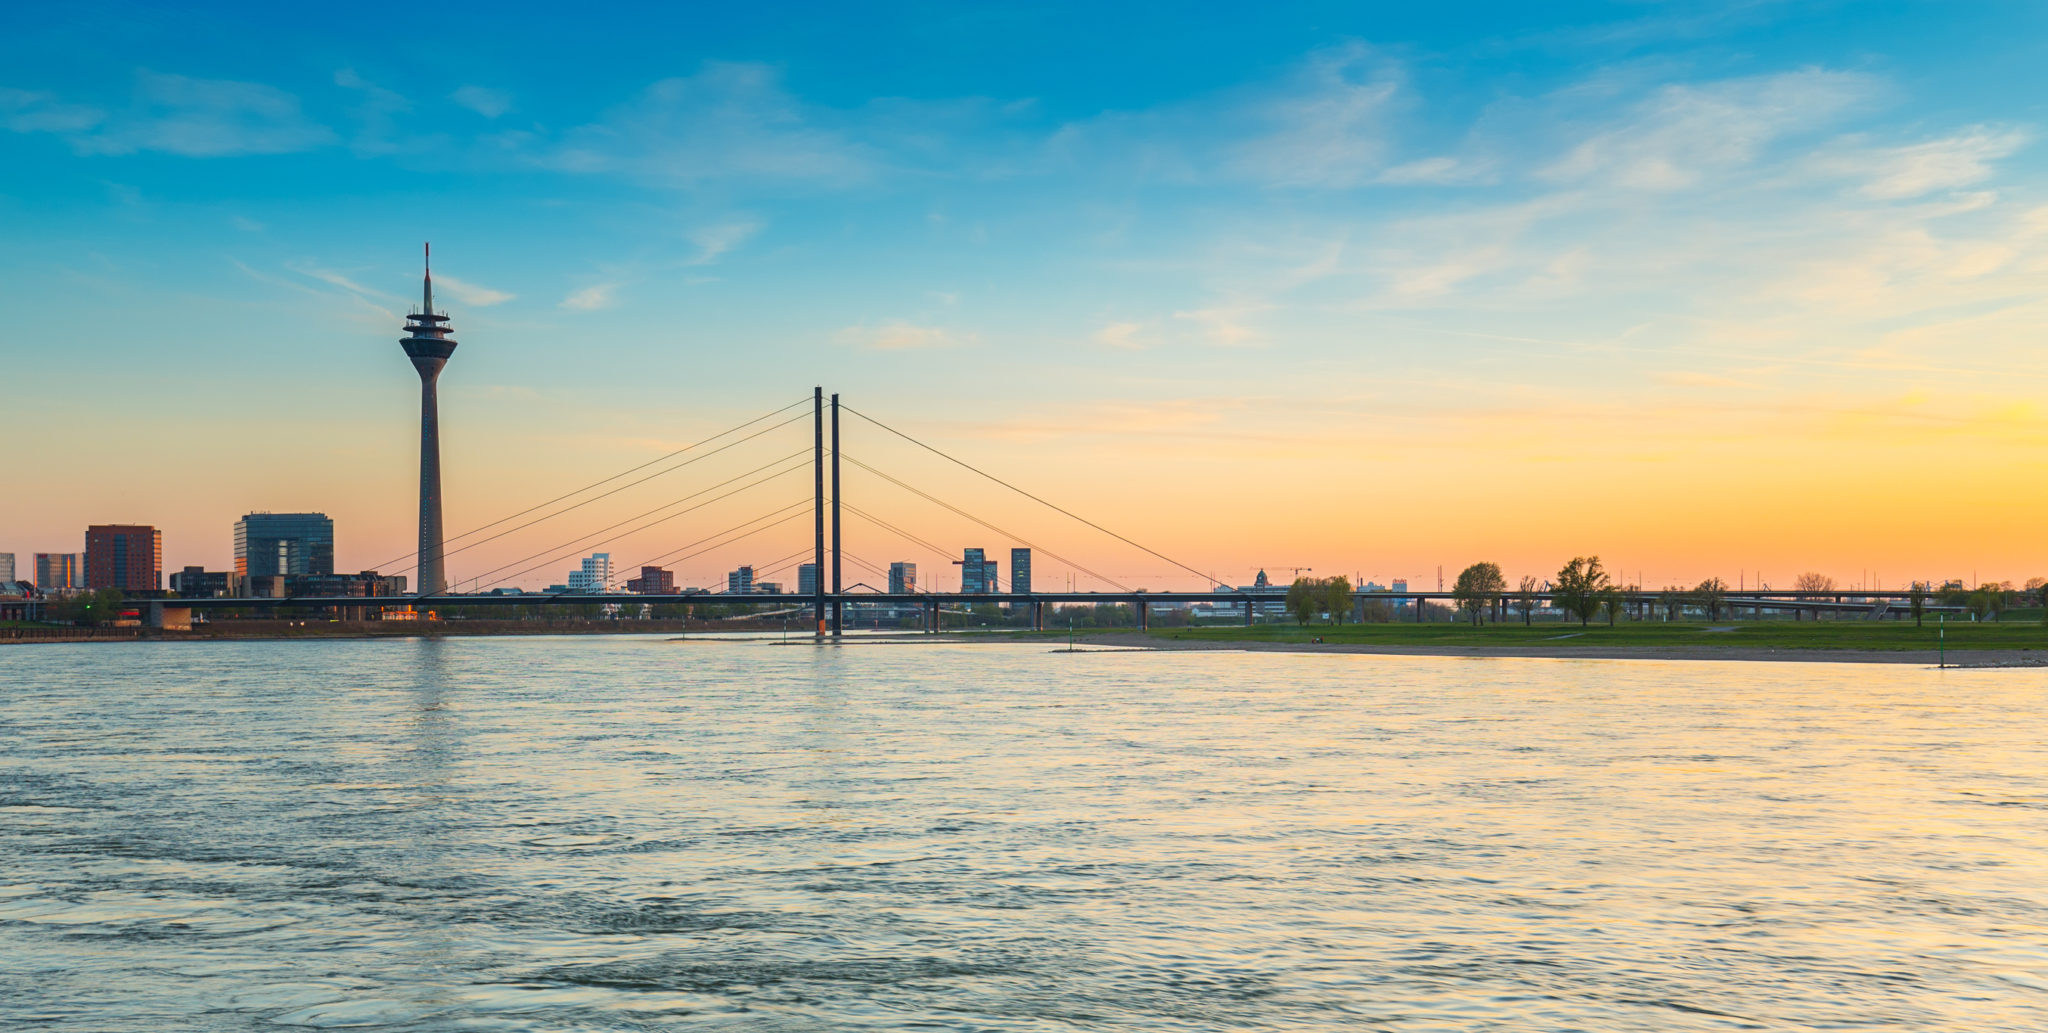 Haushaltsauflösung und Entrümpelung Düsseldorf - wir bieten Haushaltsauflösungen, Entrümpelungen, Wohnungsauflösungen, Nachlassverwertungen und Geschäftsauflösungen an.